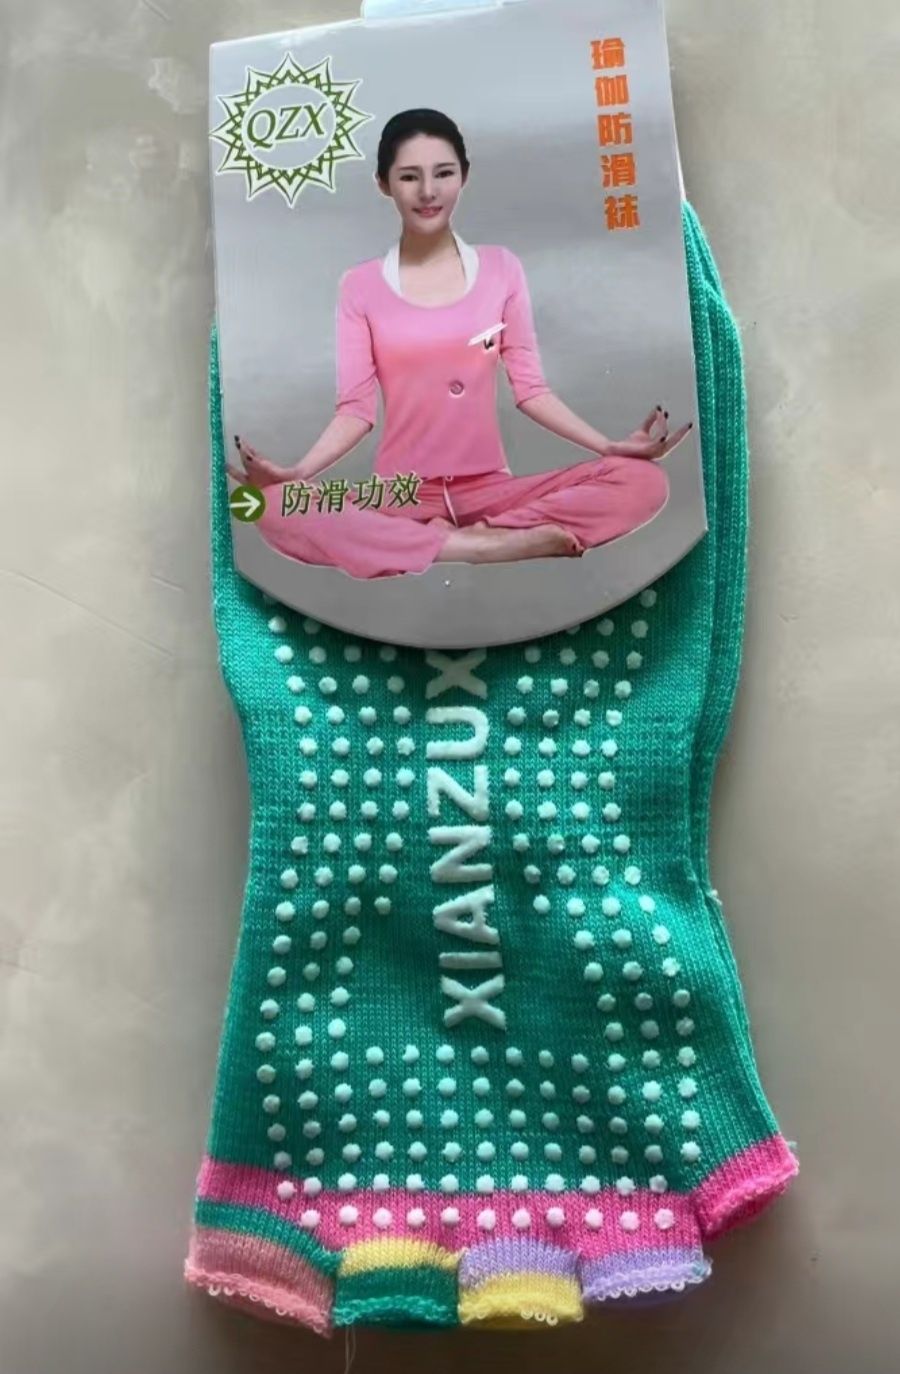 Носки для йоги размер стандарт 2 вида